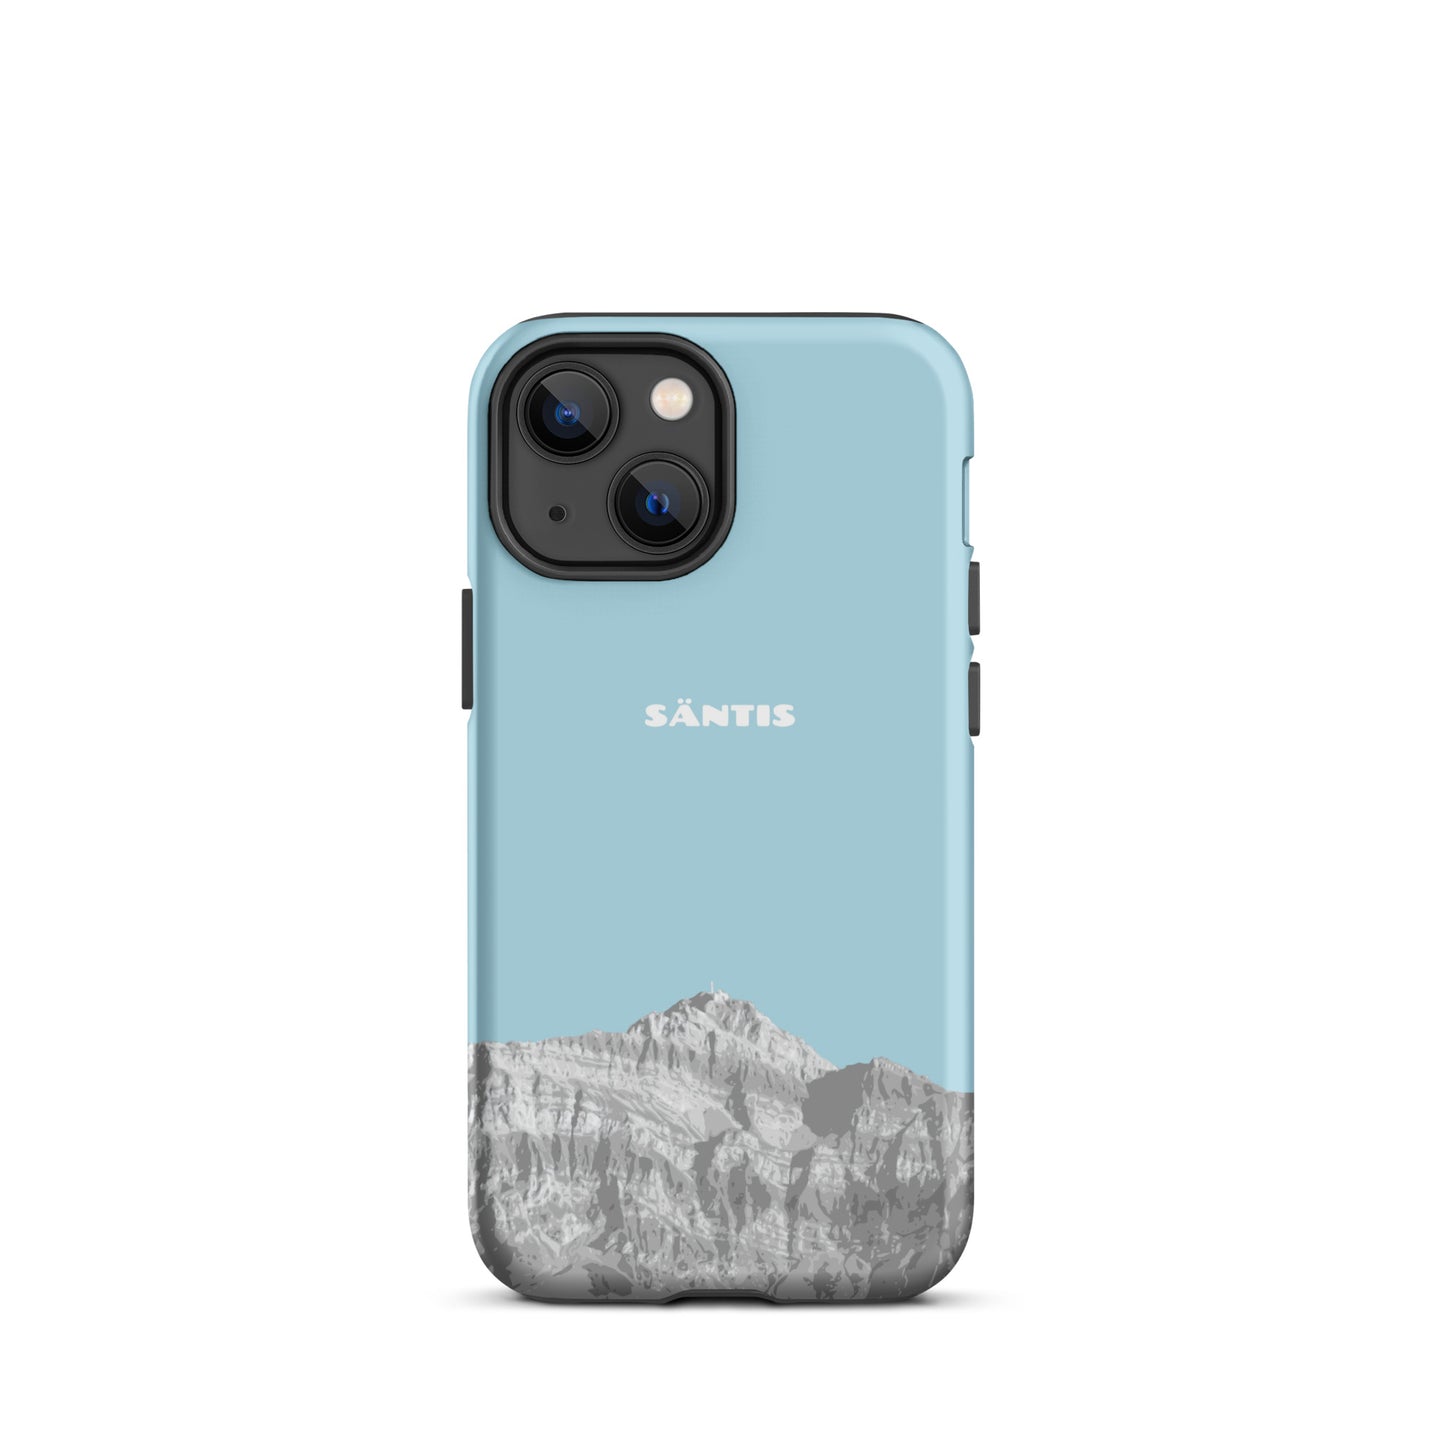 Hülle für das iPhone 13 Mini von Apple in der Farbe Hellblau, dass den Säntis im Alpstein zeigt.